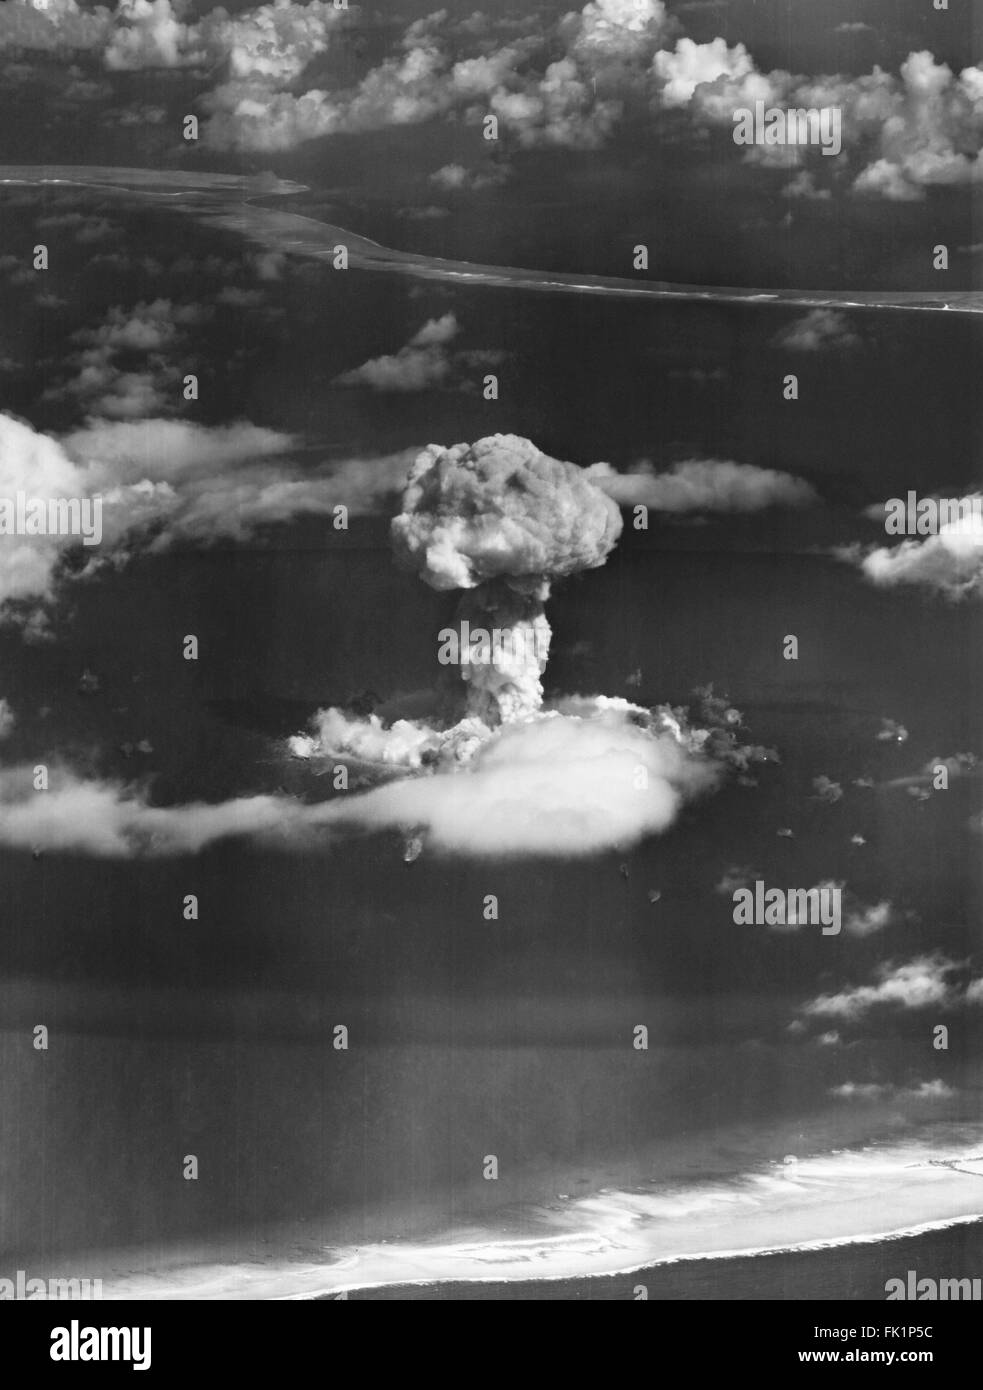 Cloud a fungo dal funzionamento crocevia di armi nucleari a prova di Bikini Atoll, Isole Marshall, Oceano Pacifico nel luglio 1946. Foto Stock